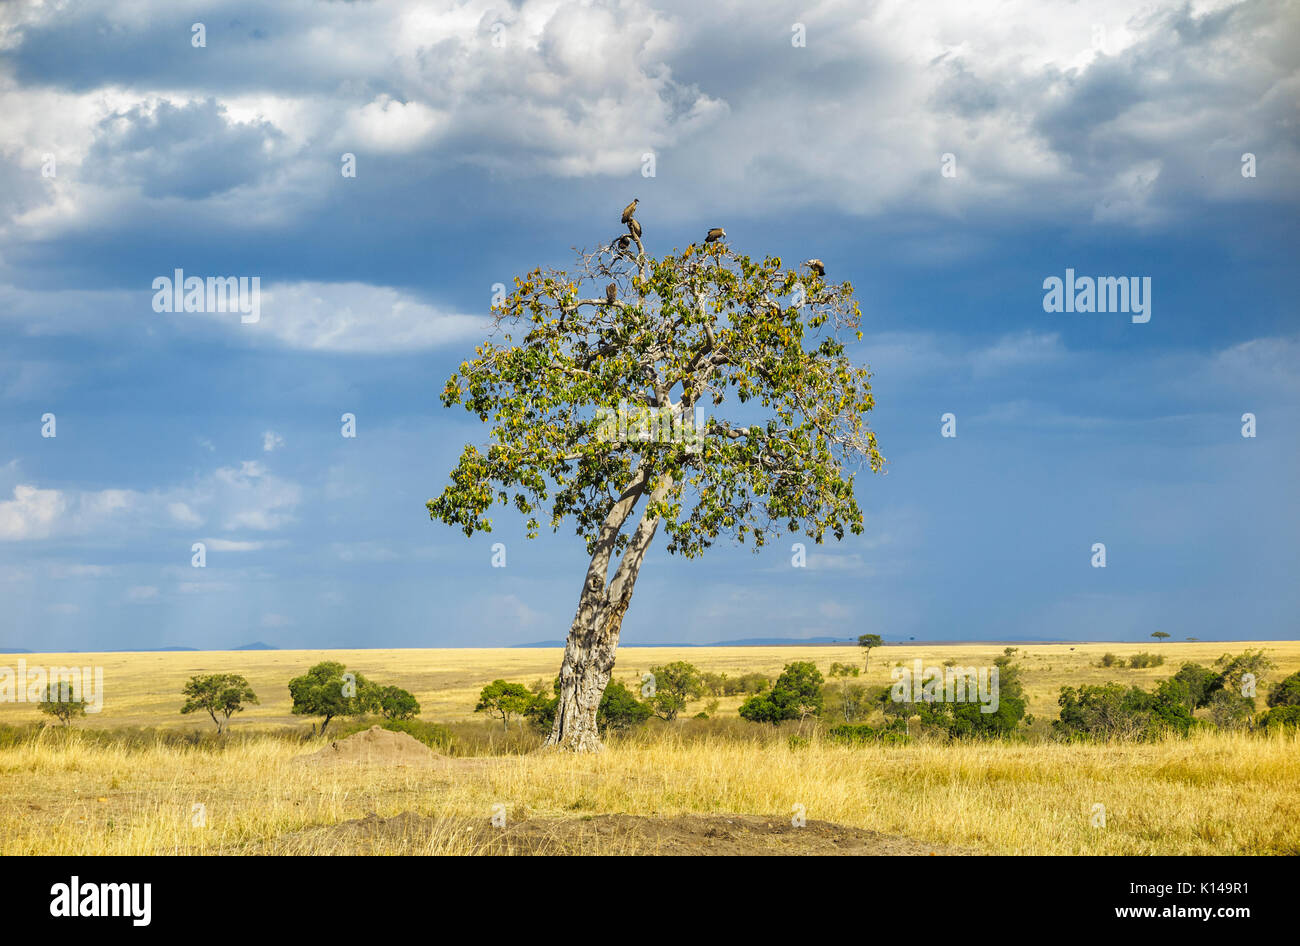 Landschaft in Savanne Grünland in Masai Mara, Kenia mit Geier hocken in einem Baum gegen einen bewölkten Himmel mit aufkommender Regen Wolken Stockfoto